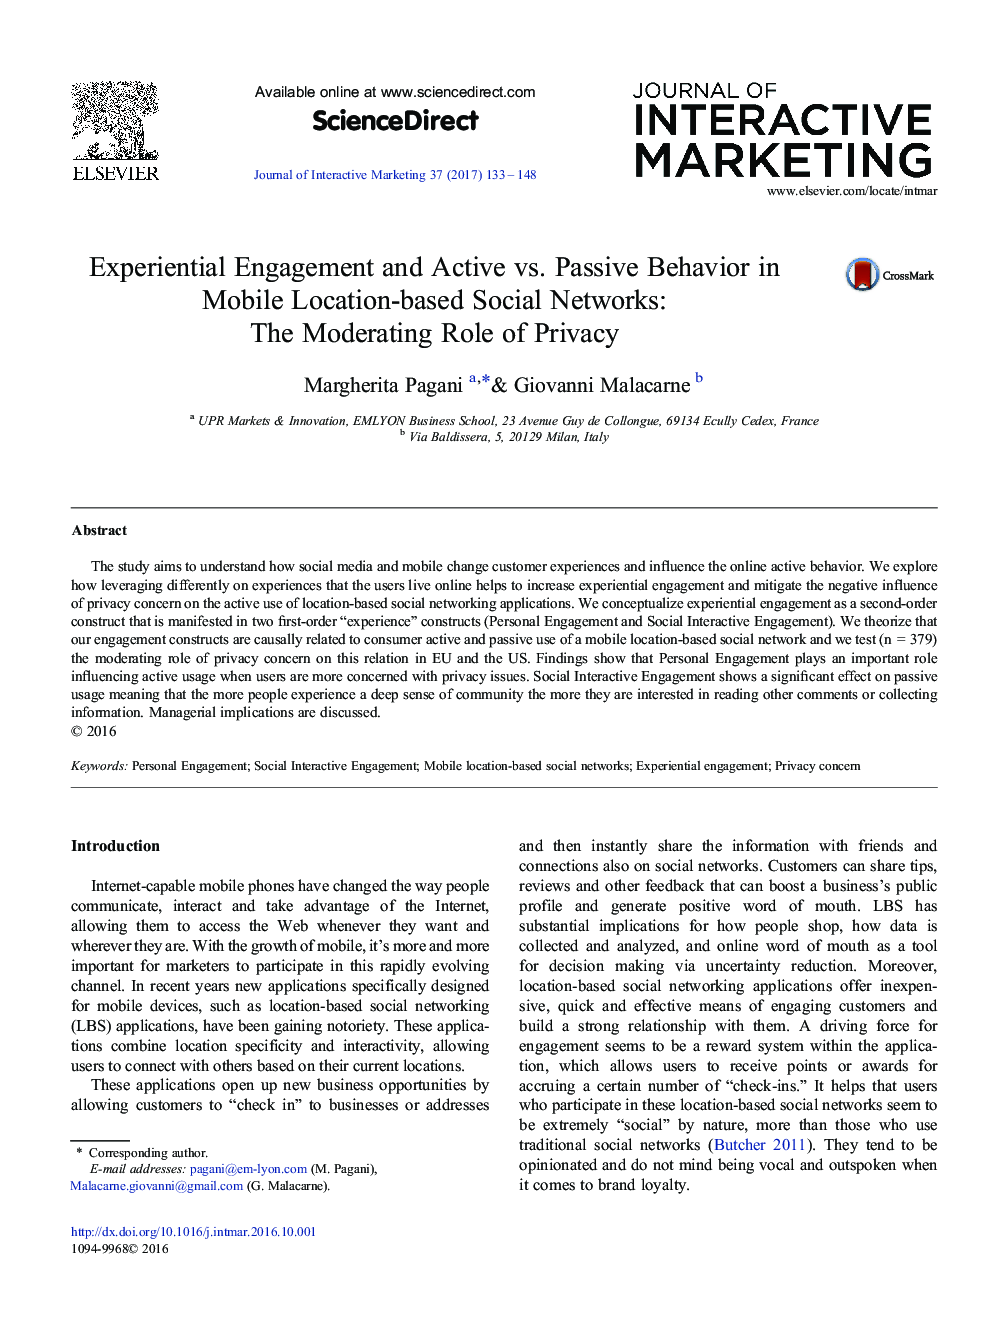 تعامل تجربه و فعال در مقابل رفتار منفعل در شبکه های اجتماعی مبتنی بر مکان های موبایل: نقش موثر حفظ حریم خصوصی 